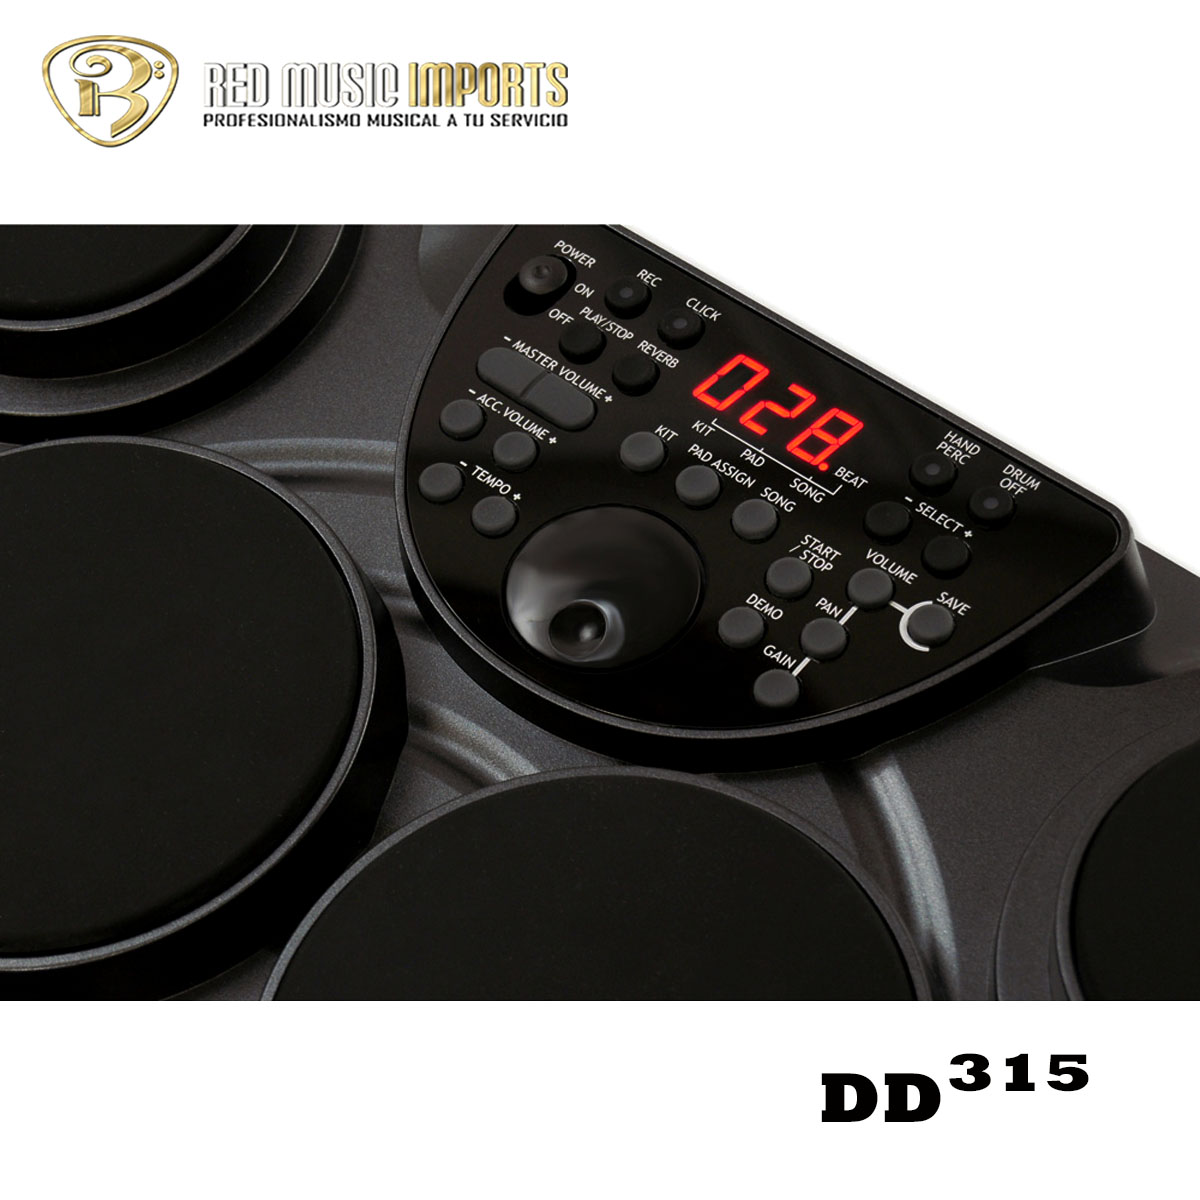 MEDELI Dd315 Batería electrónica 7 pads senstivos display usb pedal fuent -  $ 413.100 - House Music - Instrumentos Musicales - Audio Profesional -  Iluminacion